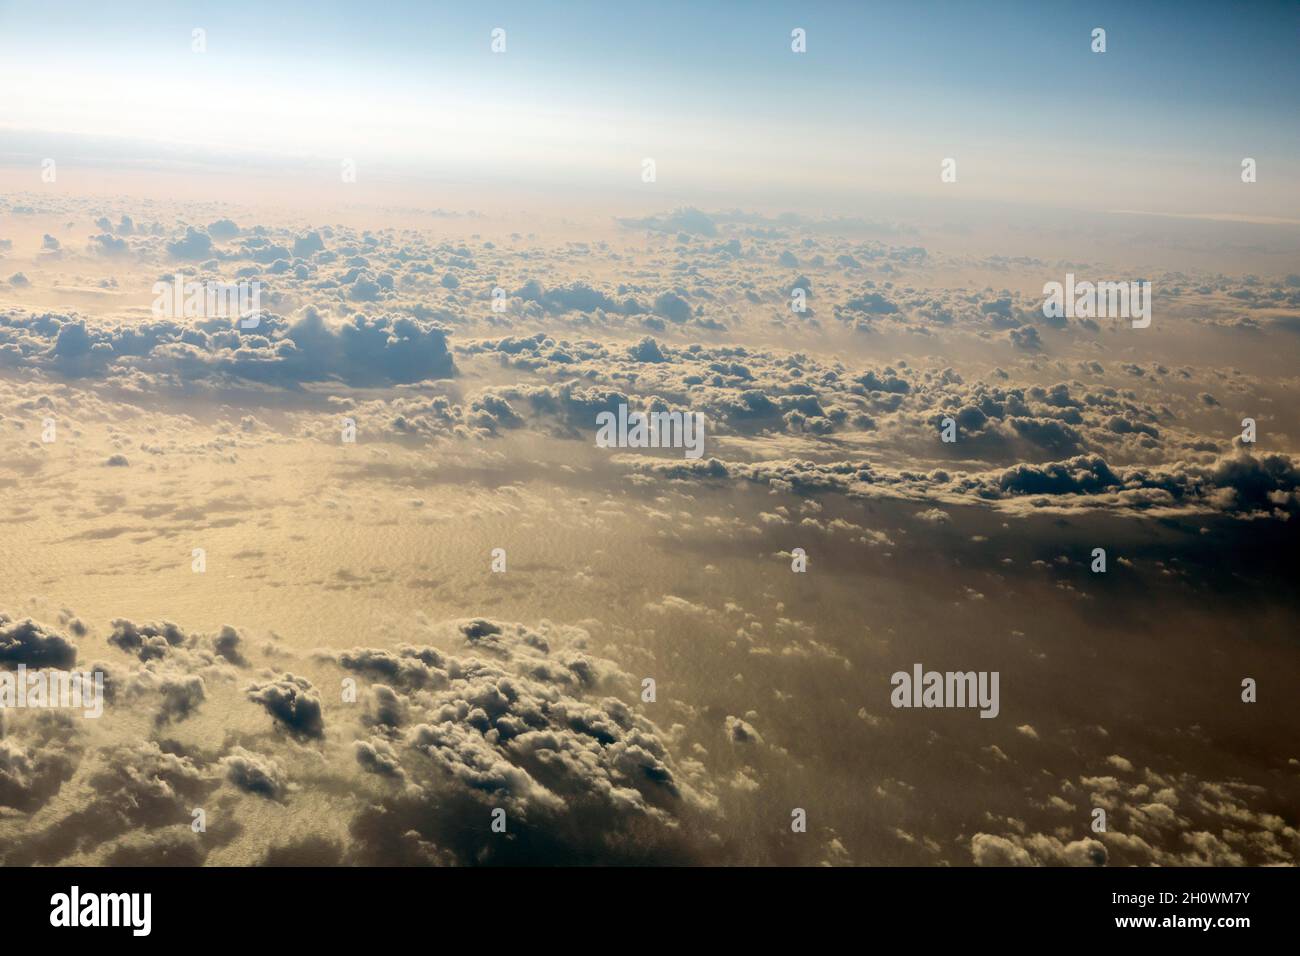 vista dall'aereo passeggeri a circa 36.000feet / 11.000 metri sul livello del mare Foto Stock